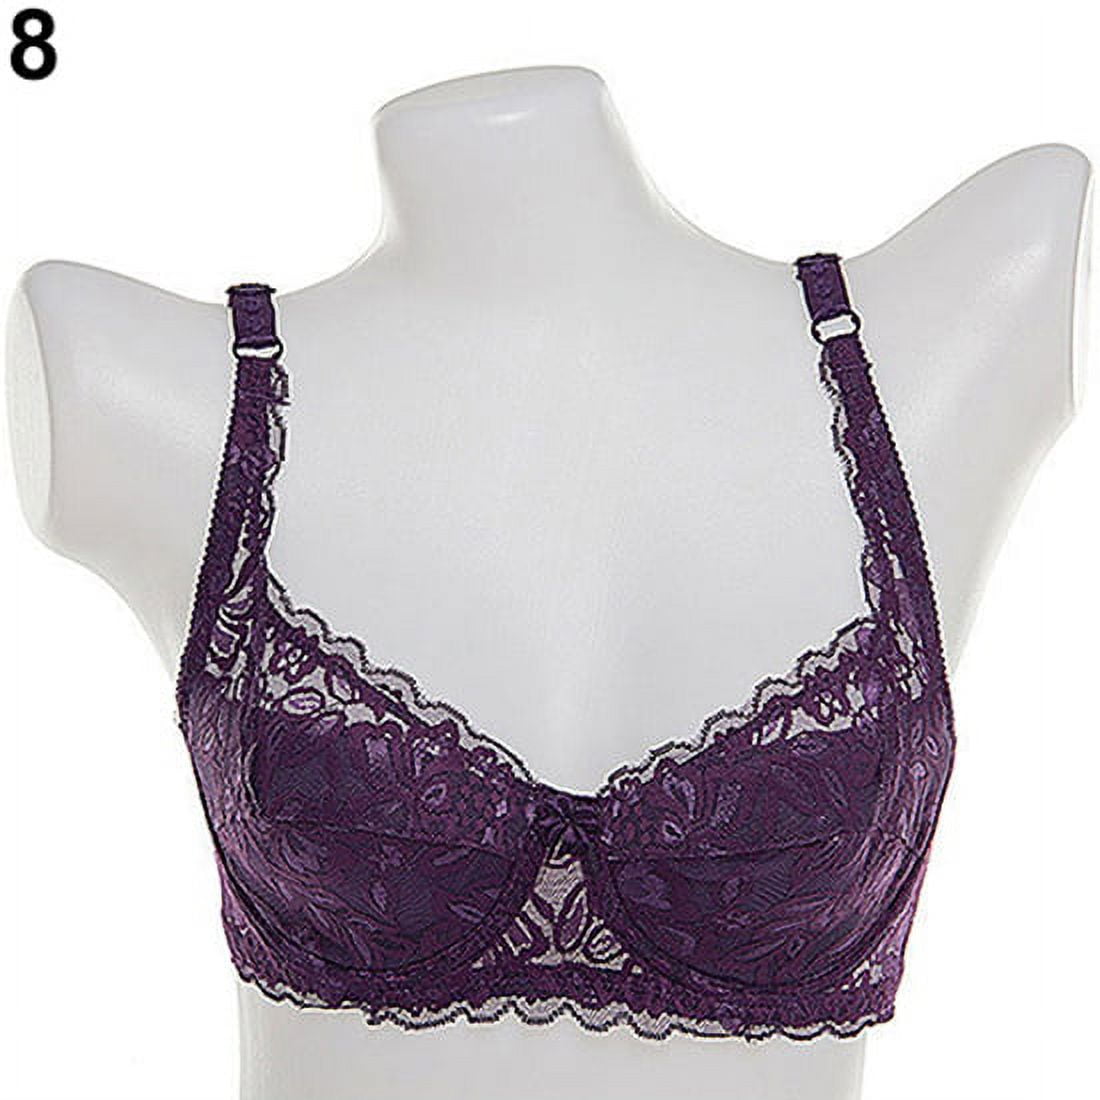 Buy sheBAE Women's Cotton lace Padded Bralette Bra Purple Online